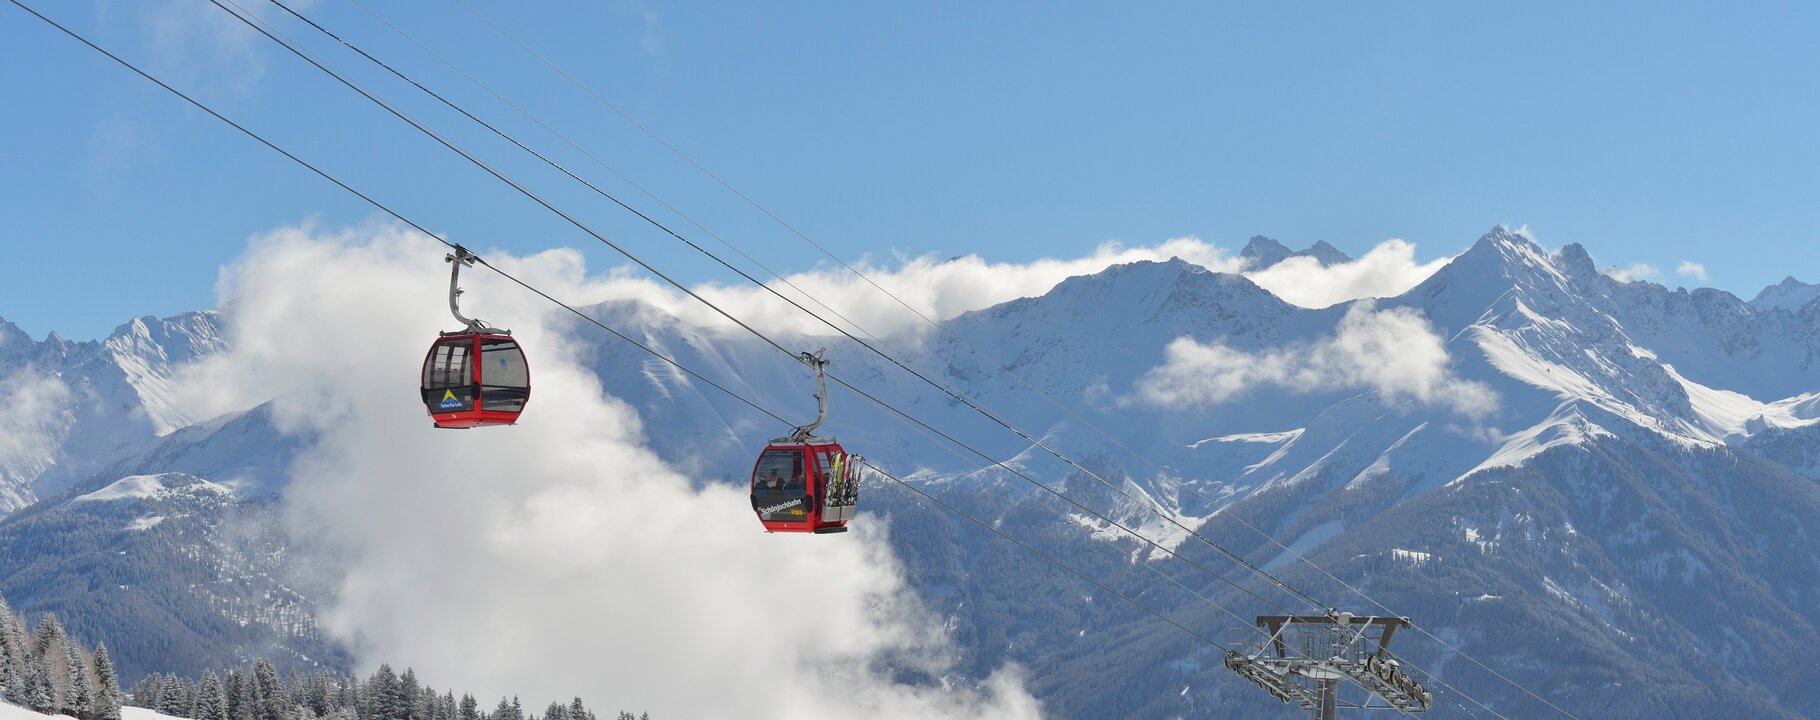 Gondel der Schönjochbahn im Skigebiet Serfaus-Fiss-Ladis in Tirol | © Sepp Mallaun